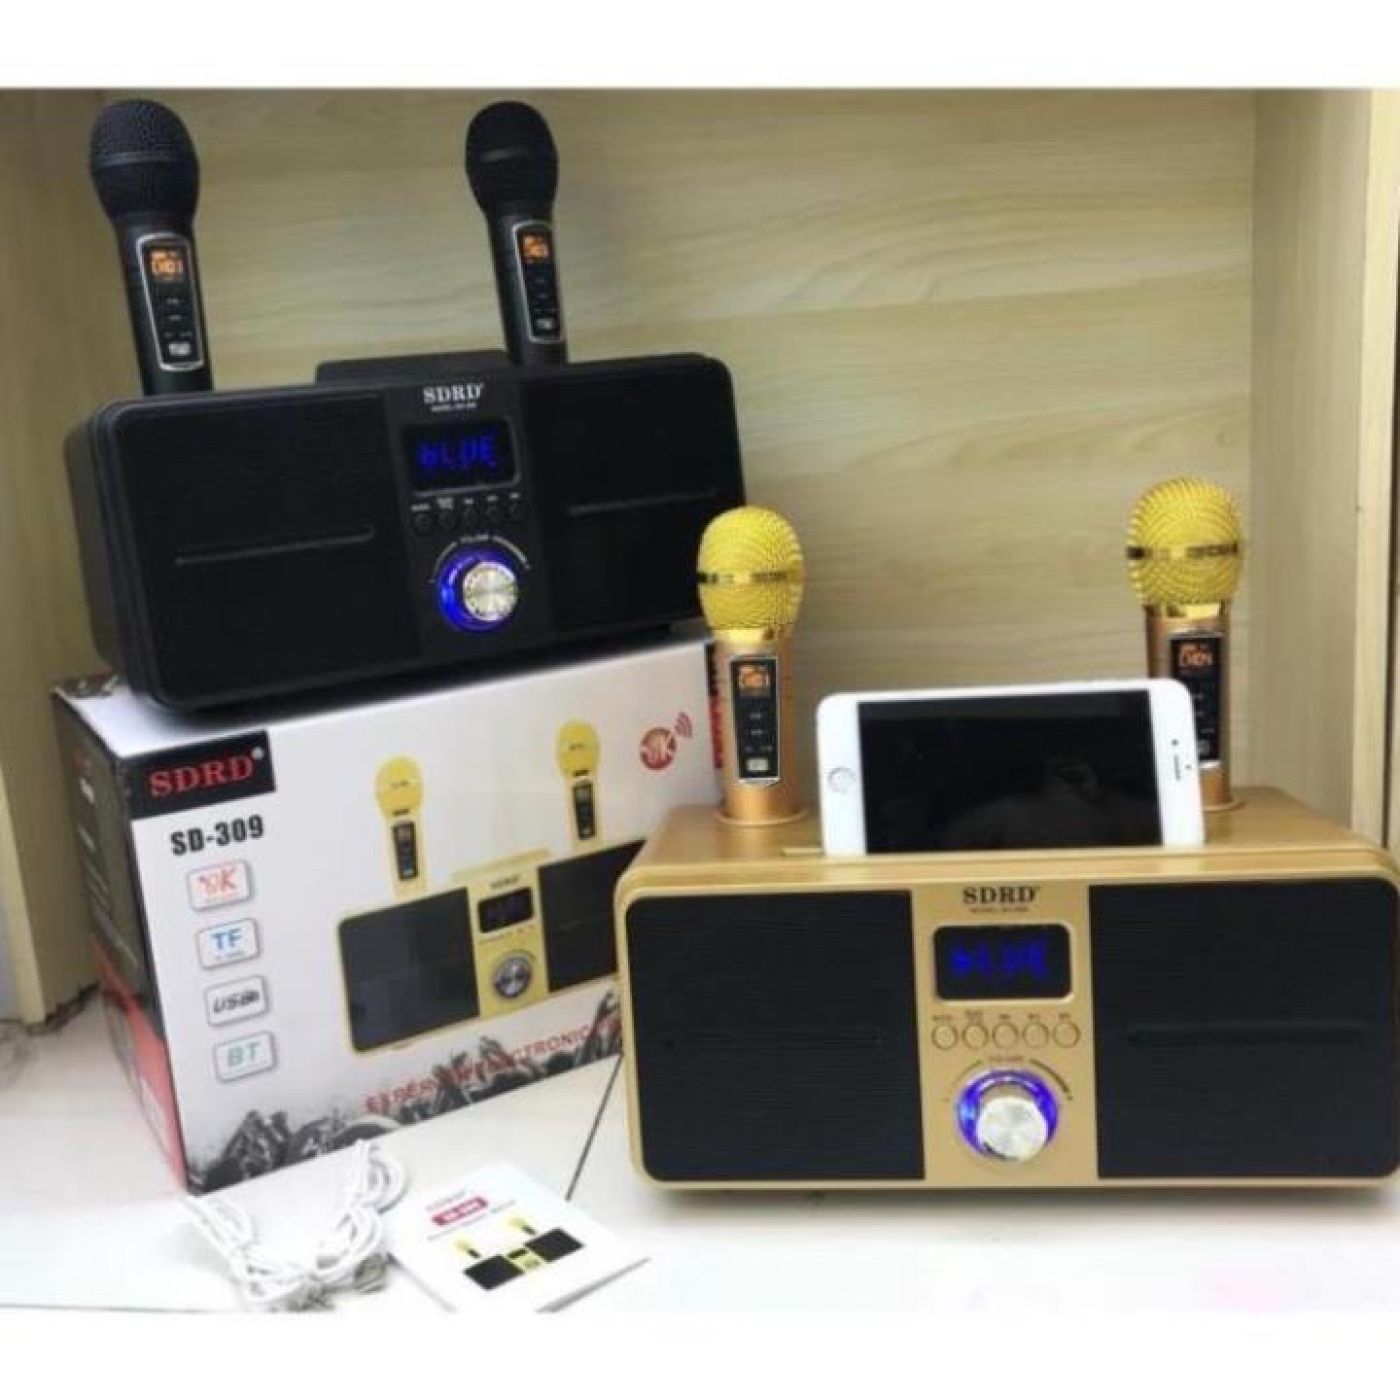 Loa Bluetooth SDRD SD 309 Karaoke mini.Bản Cao Cấp Chất Lượng, Kèm 2 Micro Sạc Không Dây BH 12 tháng